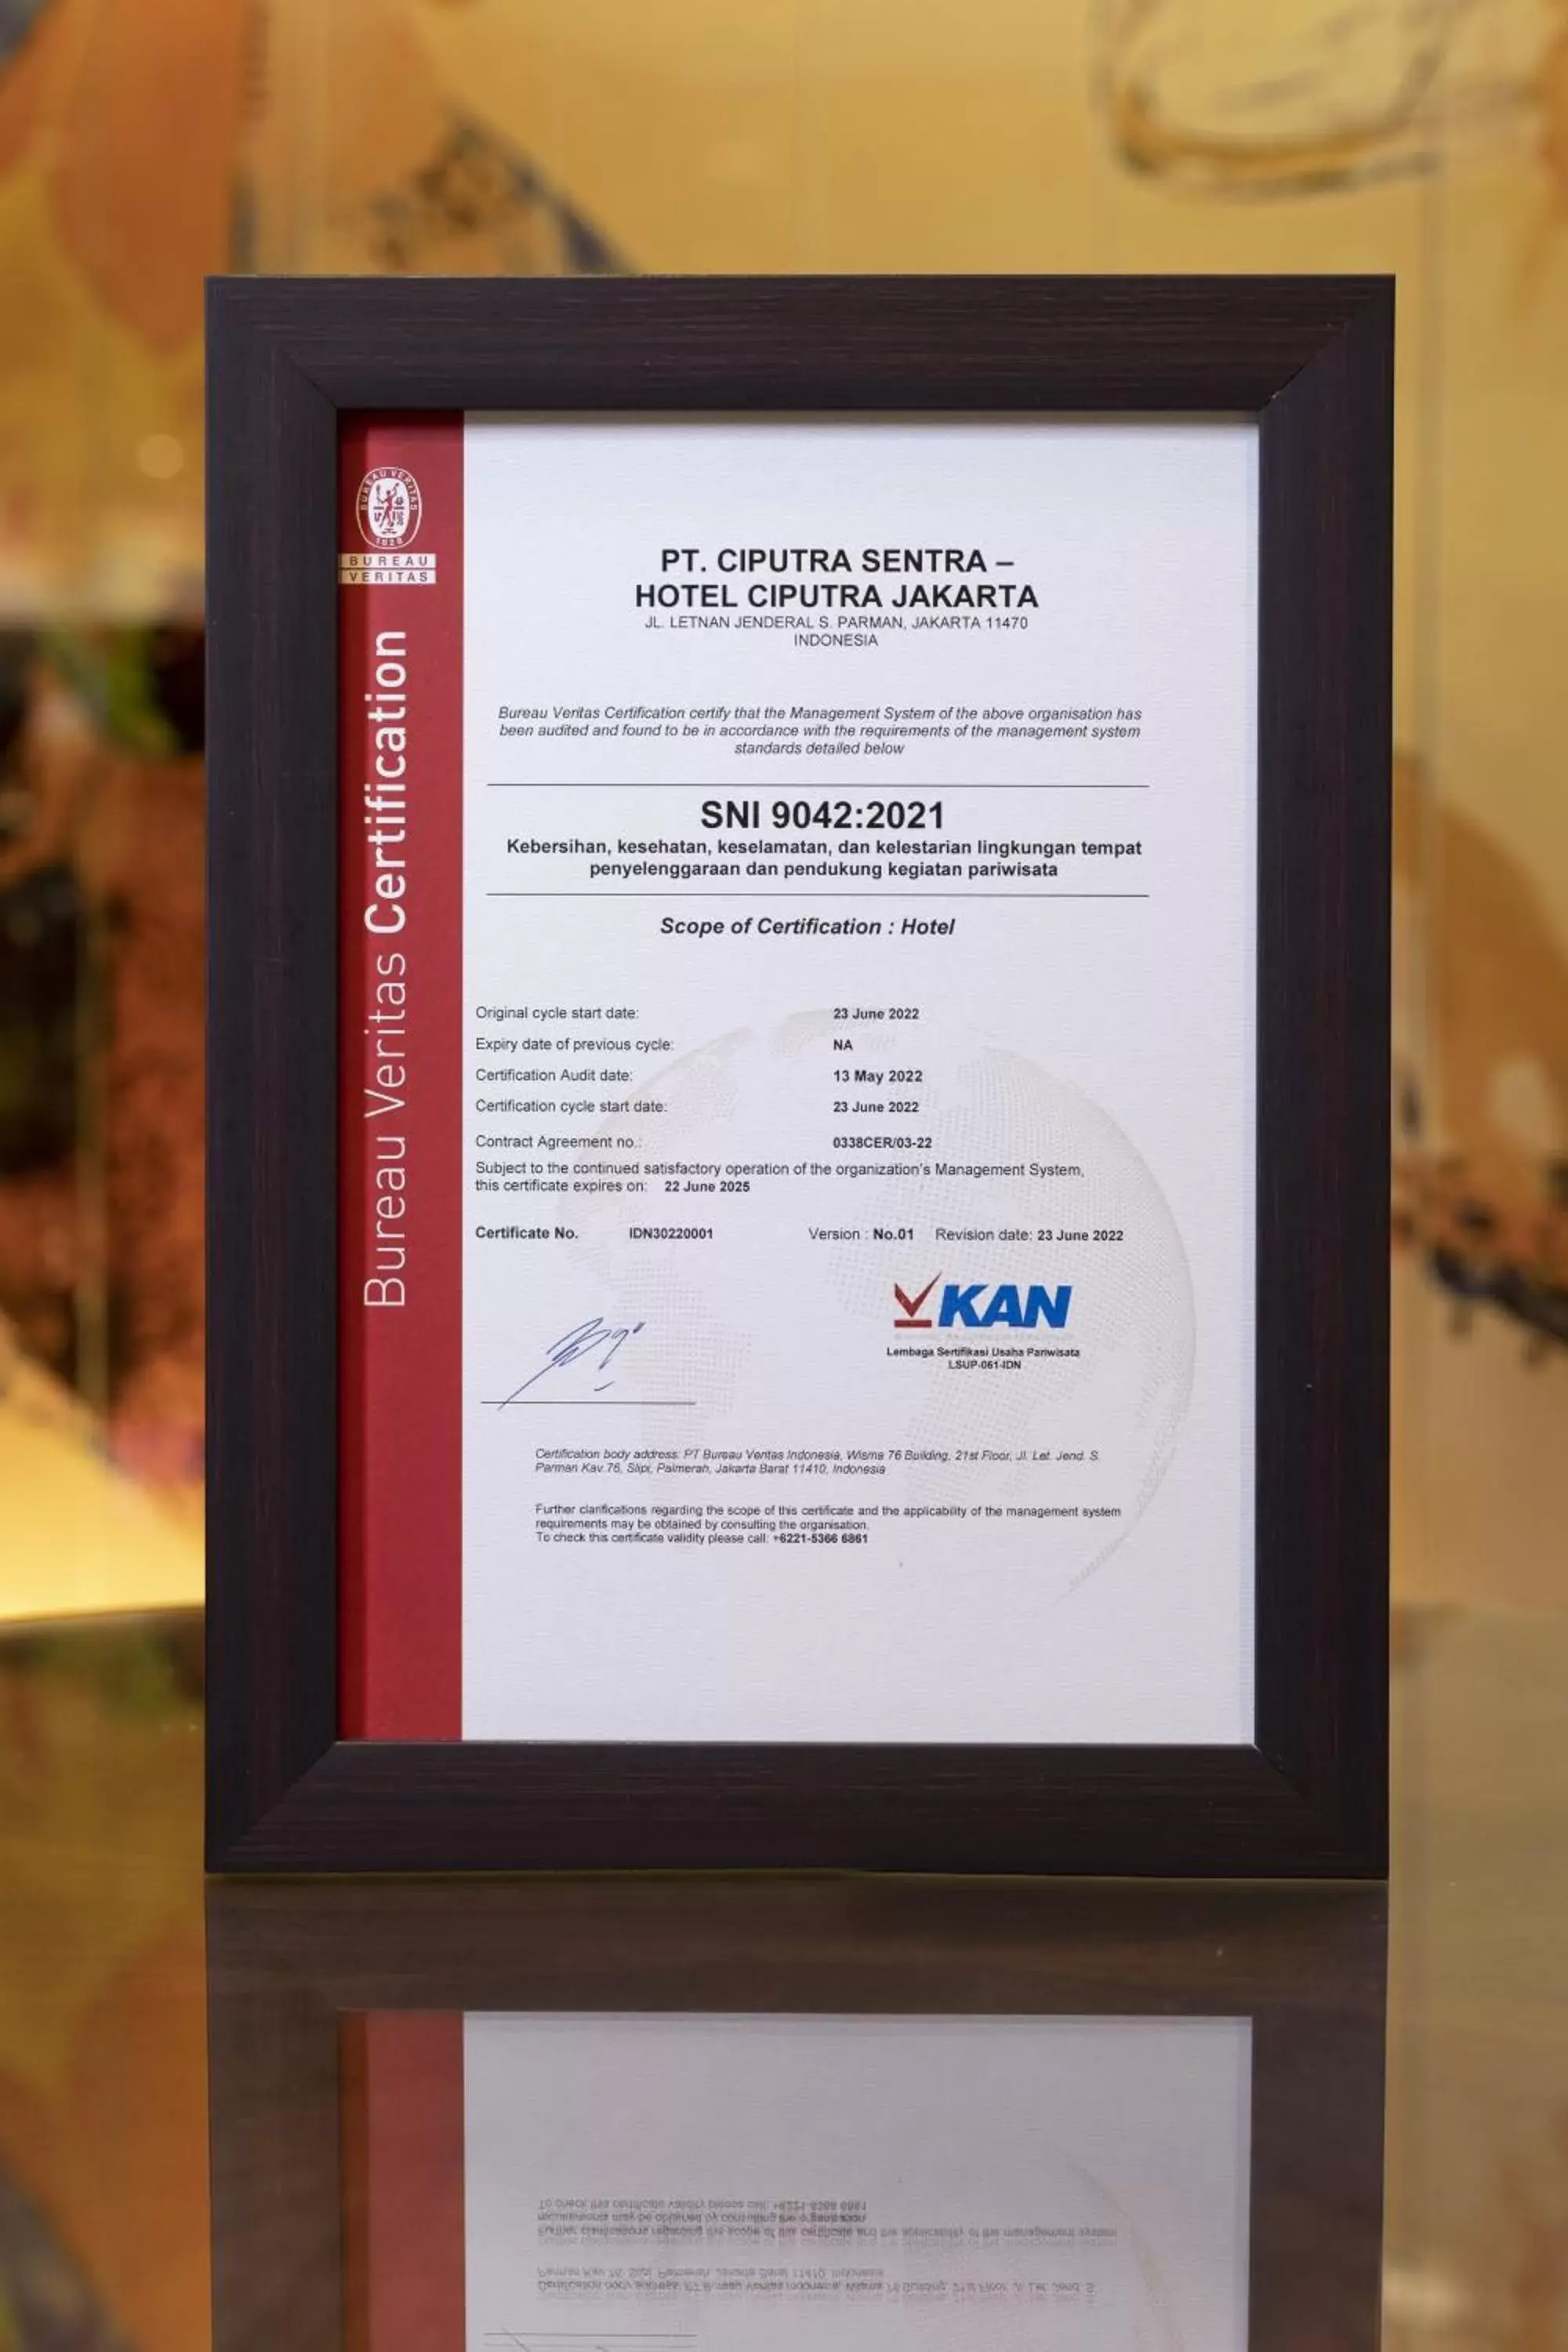 Certificate/Award in Hotel Ciputra Jakarta managed by Swiss-Belhotel International